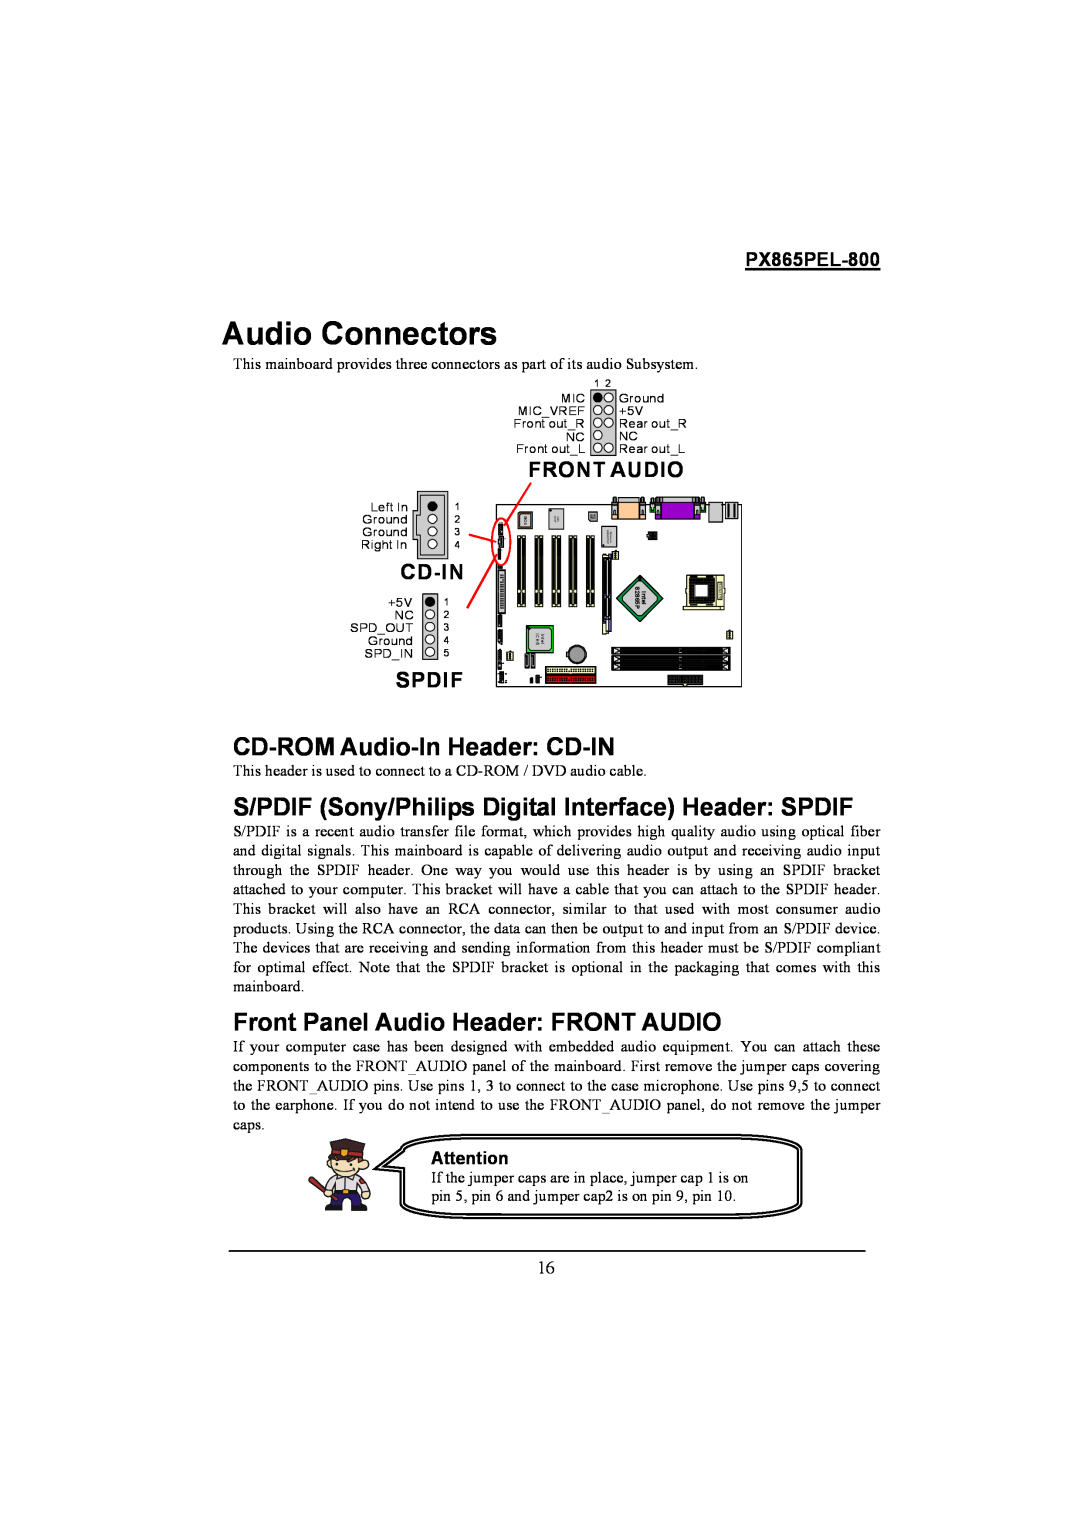 Intel PX865PEL-800 Audio Connectors, CD-ROM Audio-InHeader CD-IN, Front Panel Audio Header FRONT AUDIO, Front Audio, Cd-In 